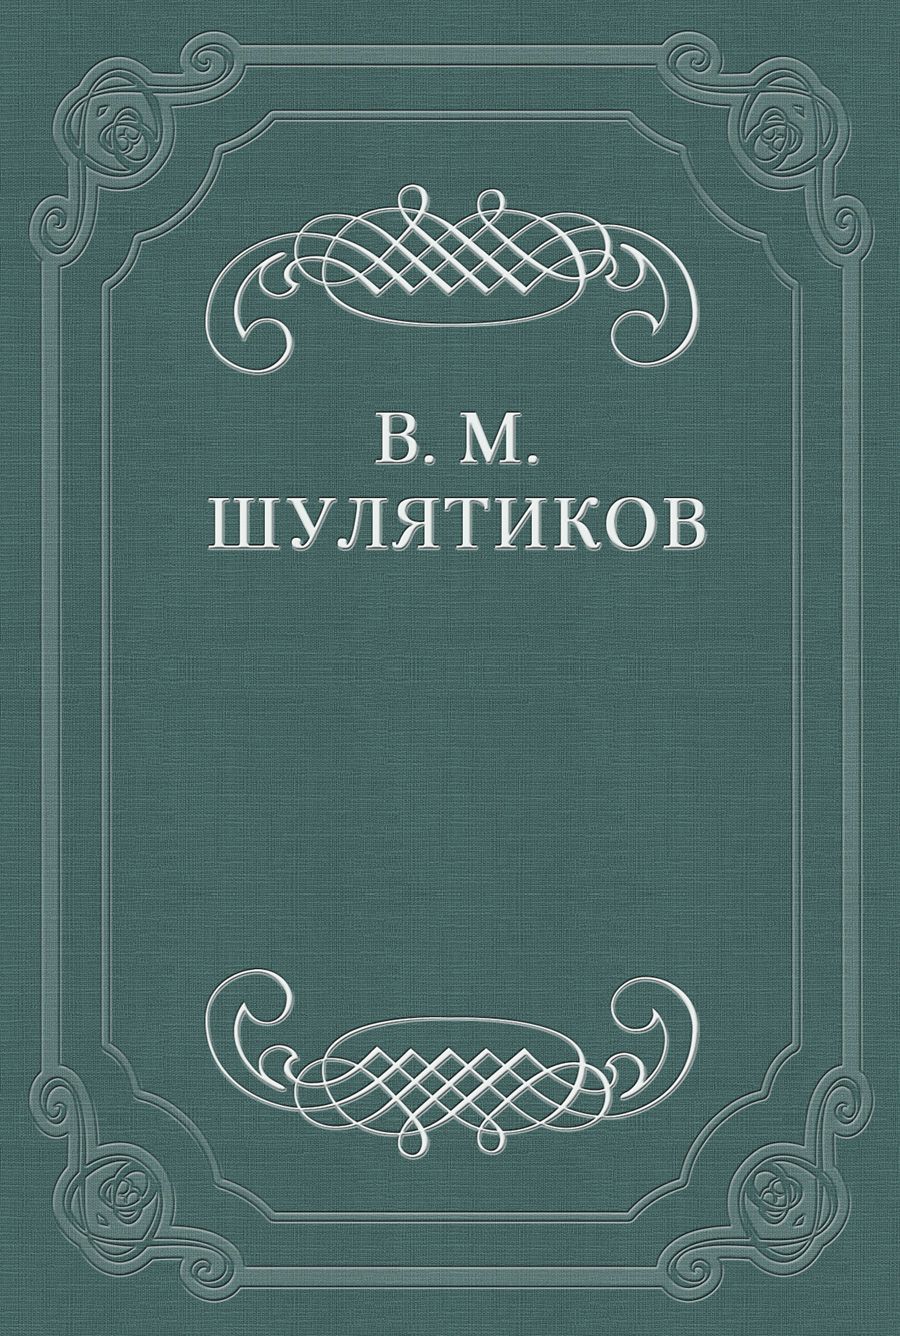 Книга В. И. Дмитриева из серии , созданная Владимир Шулятиков, может относится к жанру Критика. Стоимость книги В. И. Дмитриева  с идентификатором 662615 составляет 5.99 руб.